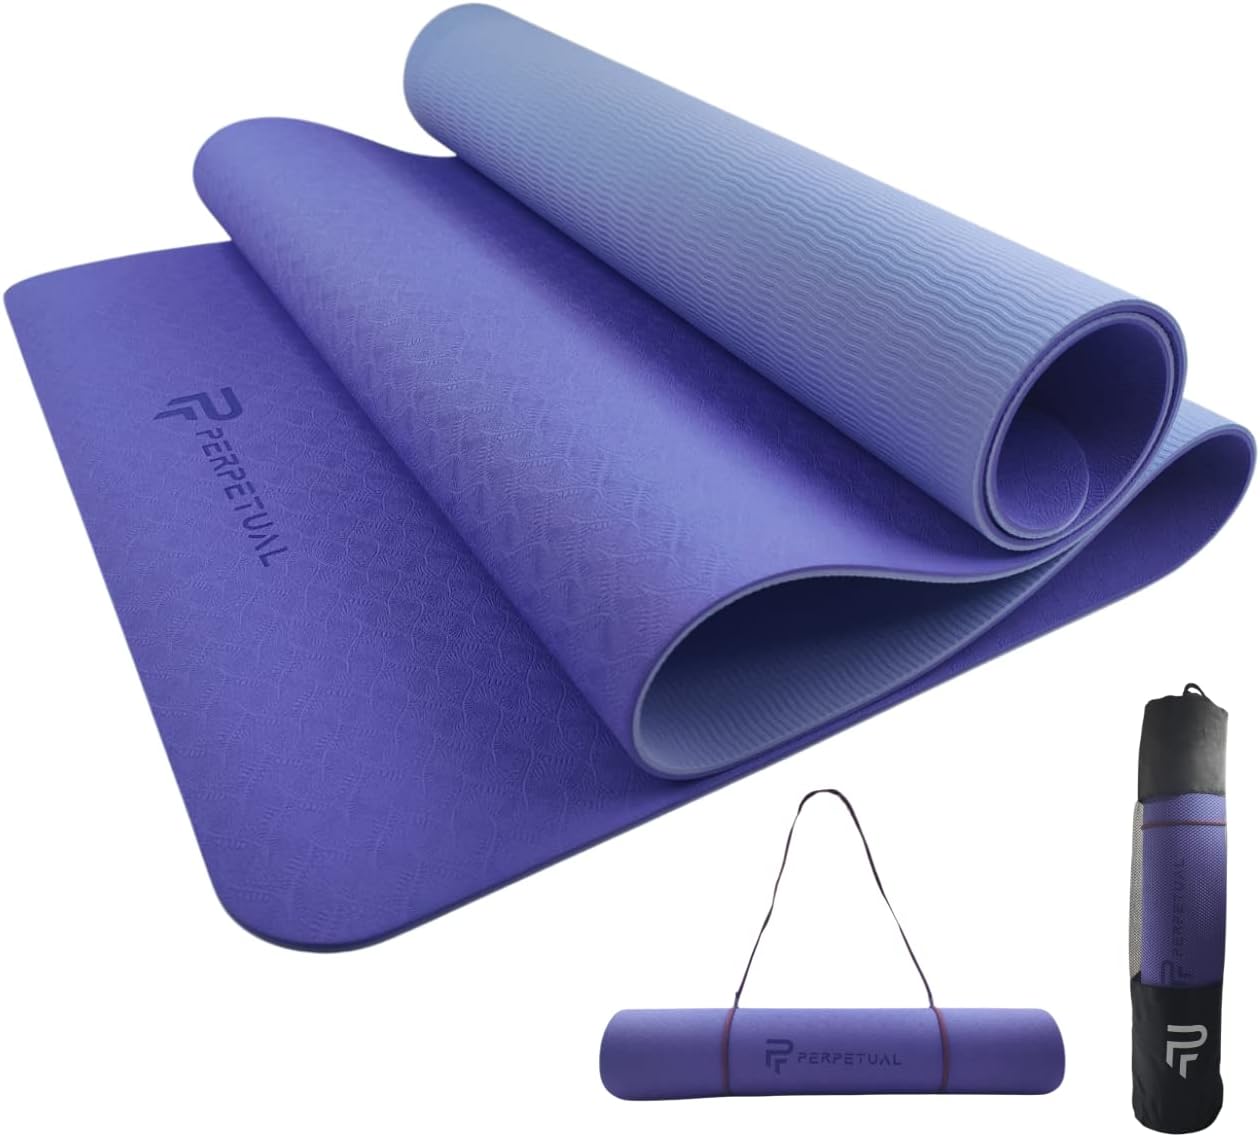 Esterilla Perpetual De Yoga Y Pilates Antideslizante De 6mm Con Correa Y Bolsa De Transporte - azul-marino-violeta - 